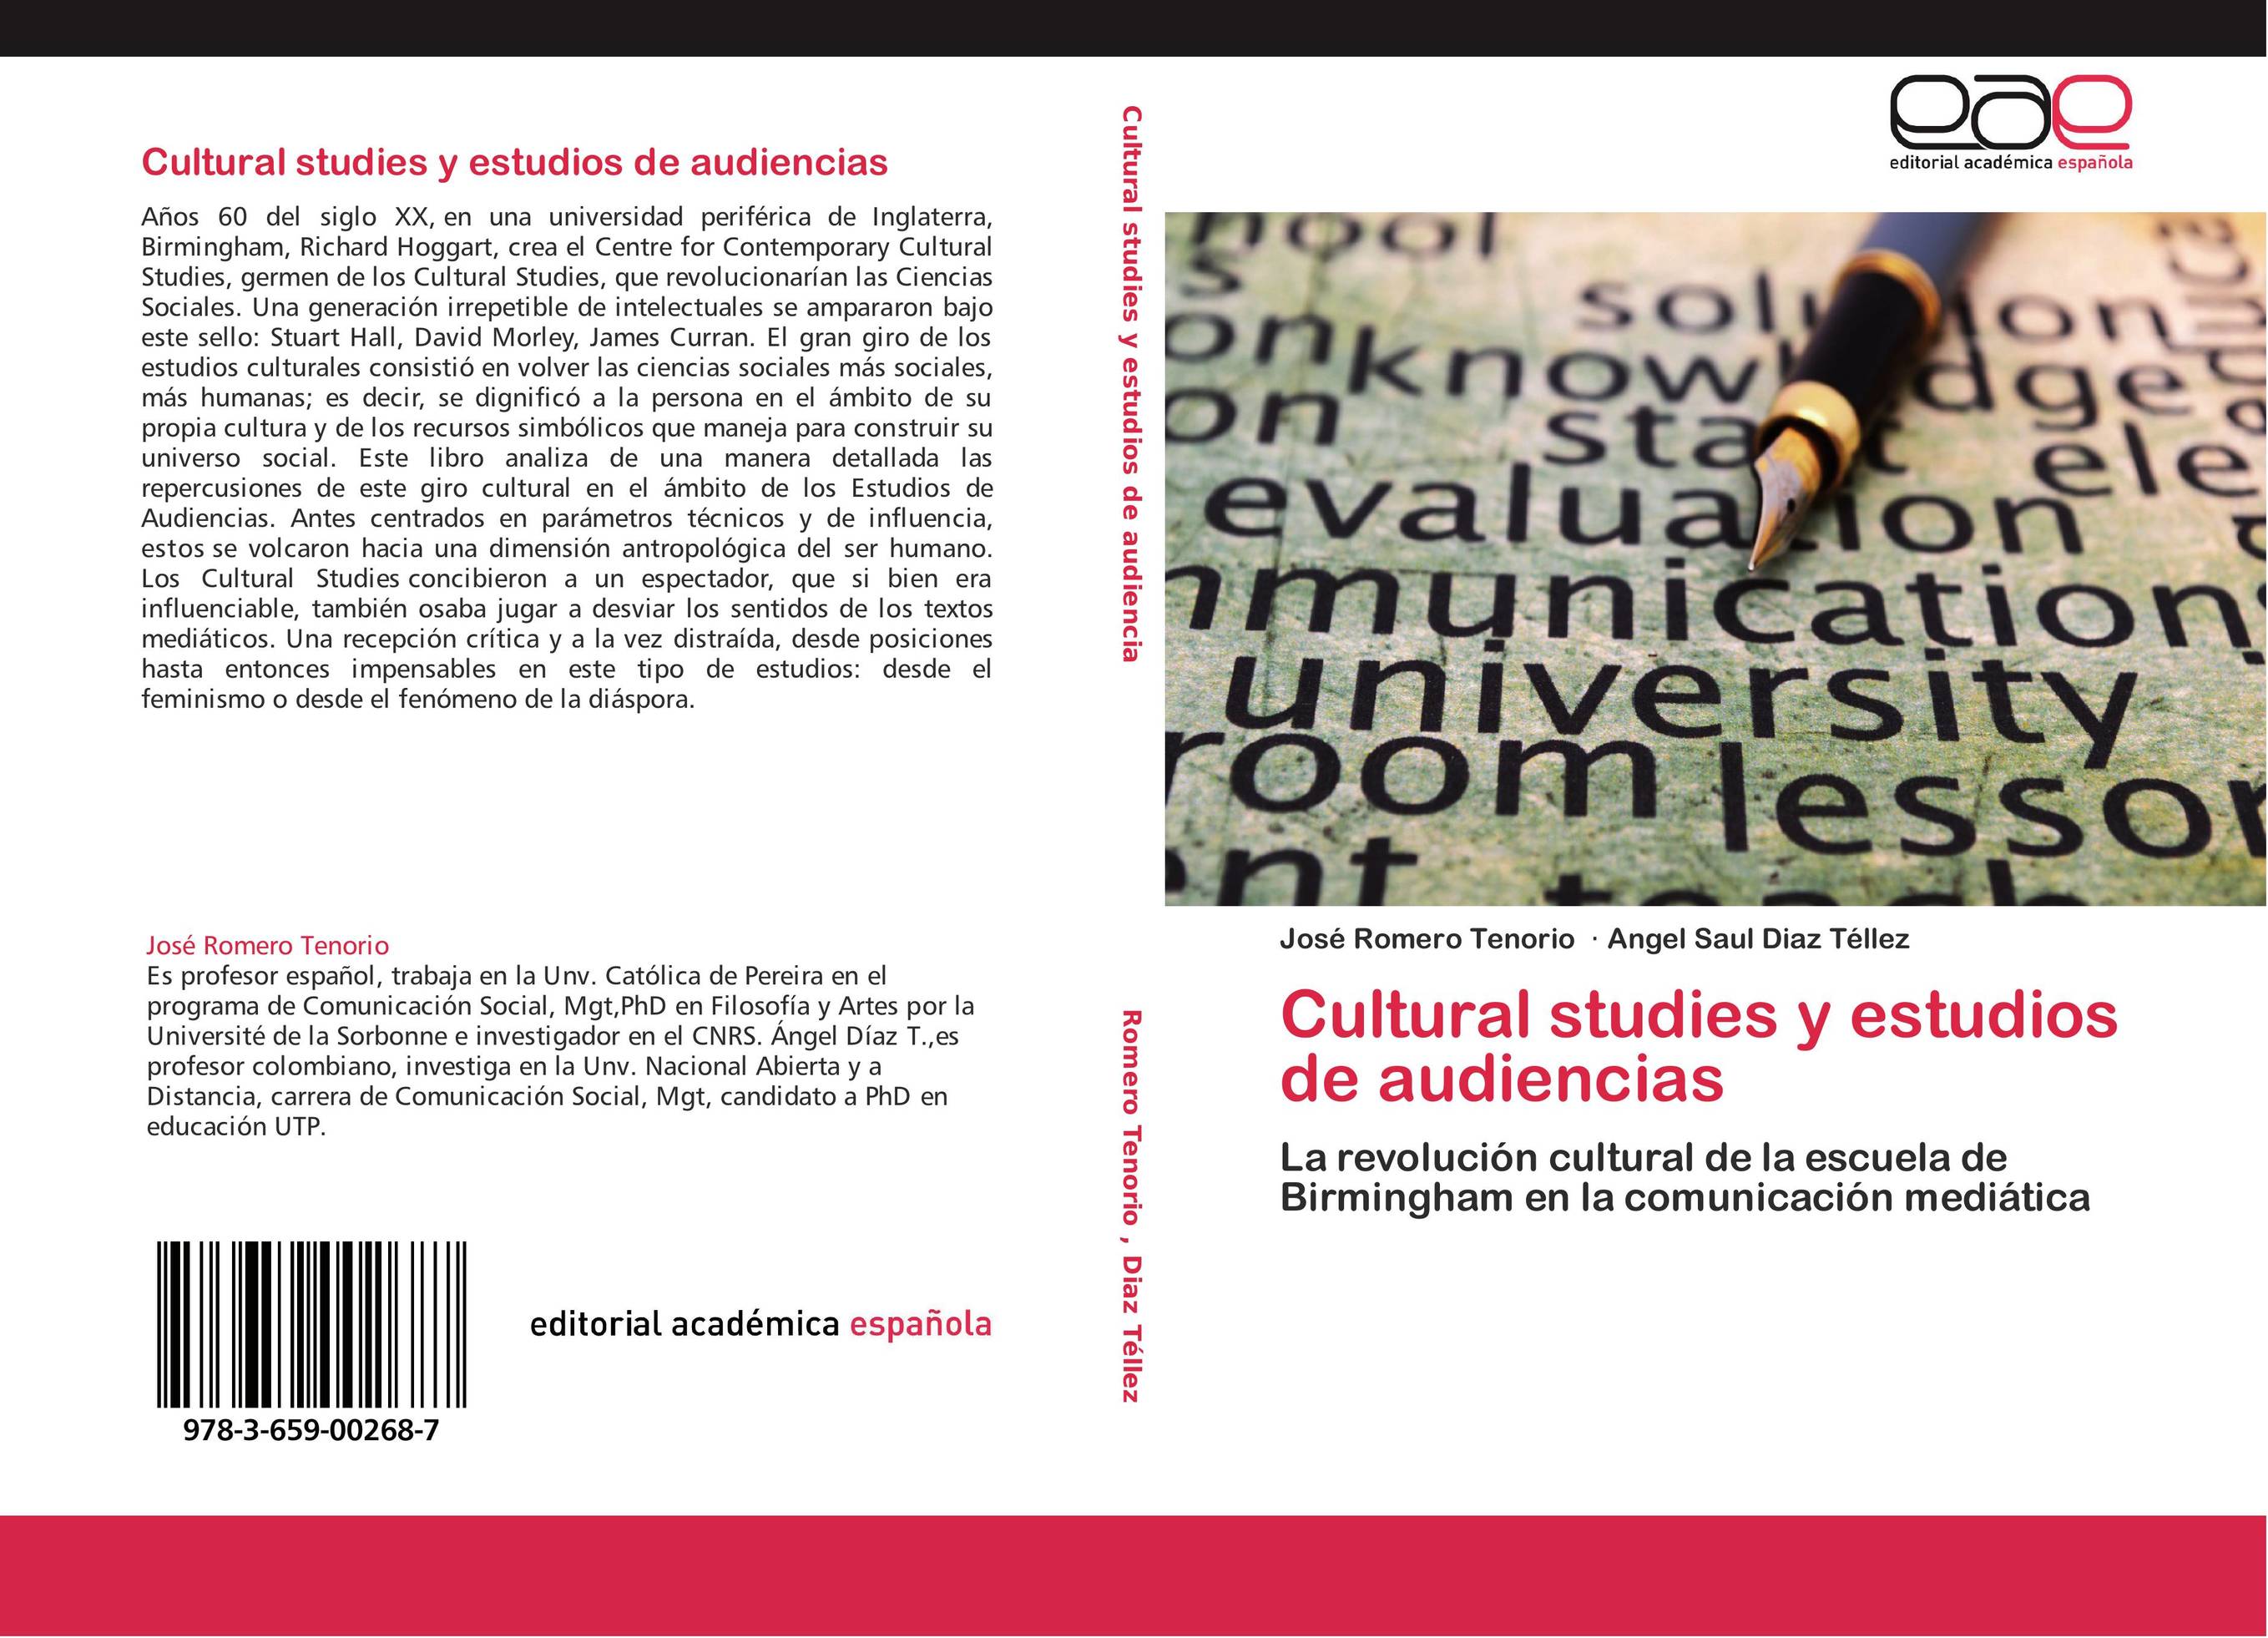 Cultural studies y estudios de audiencias